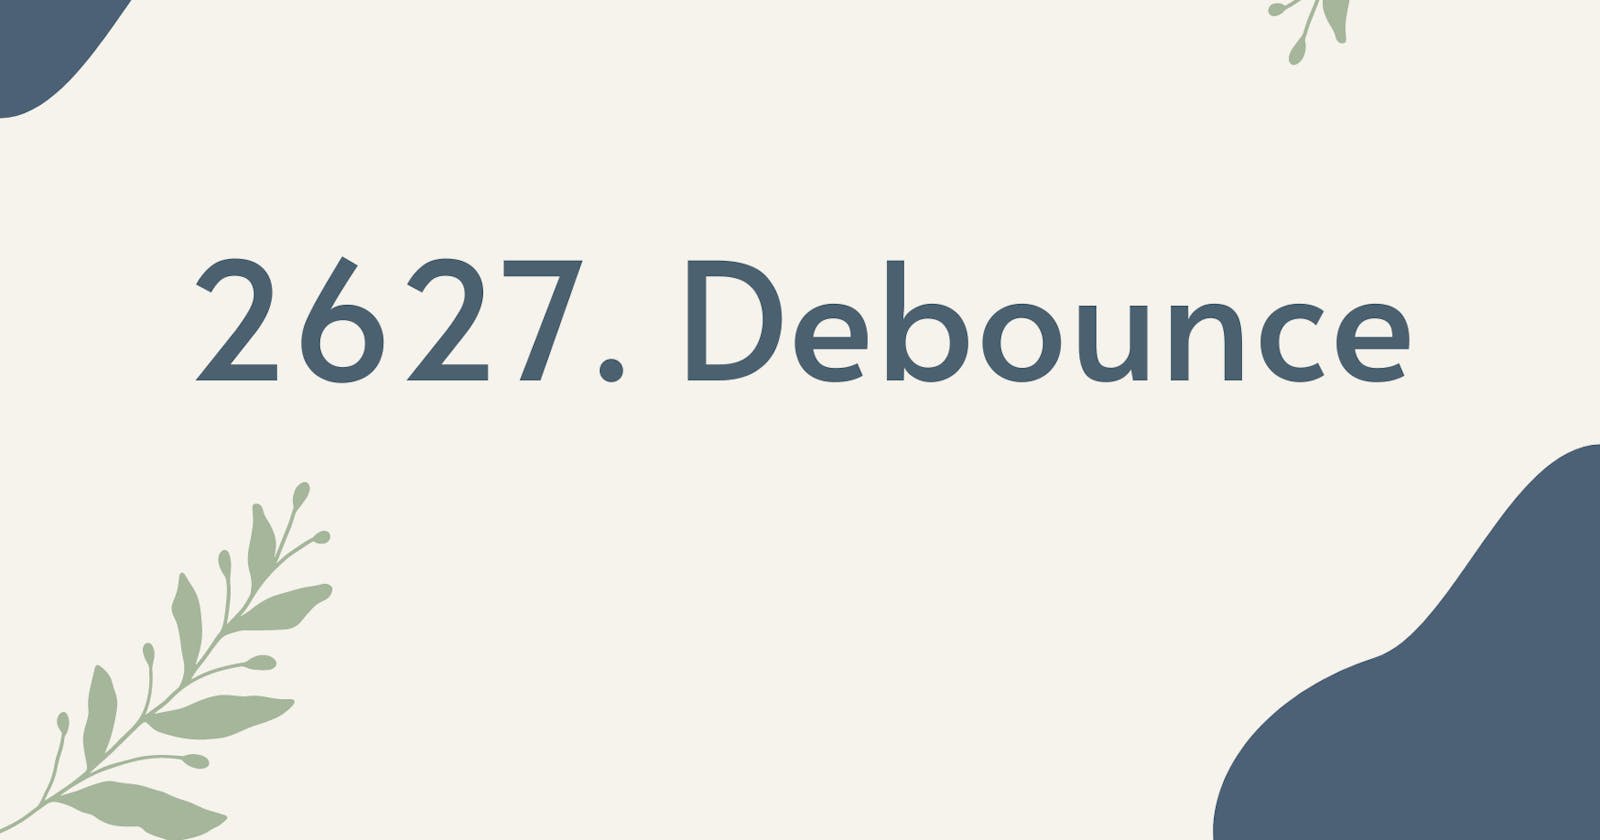 2627. Debounce